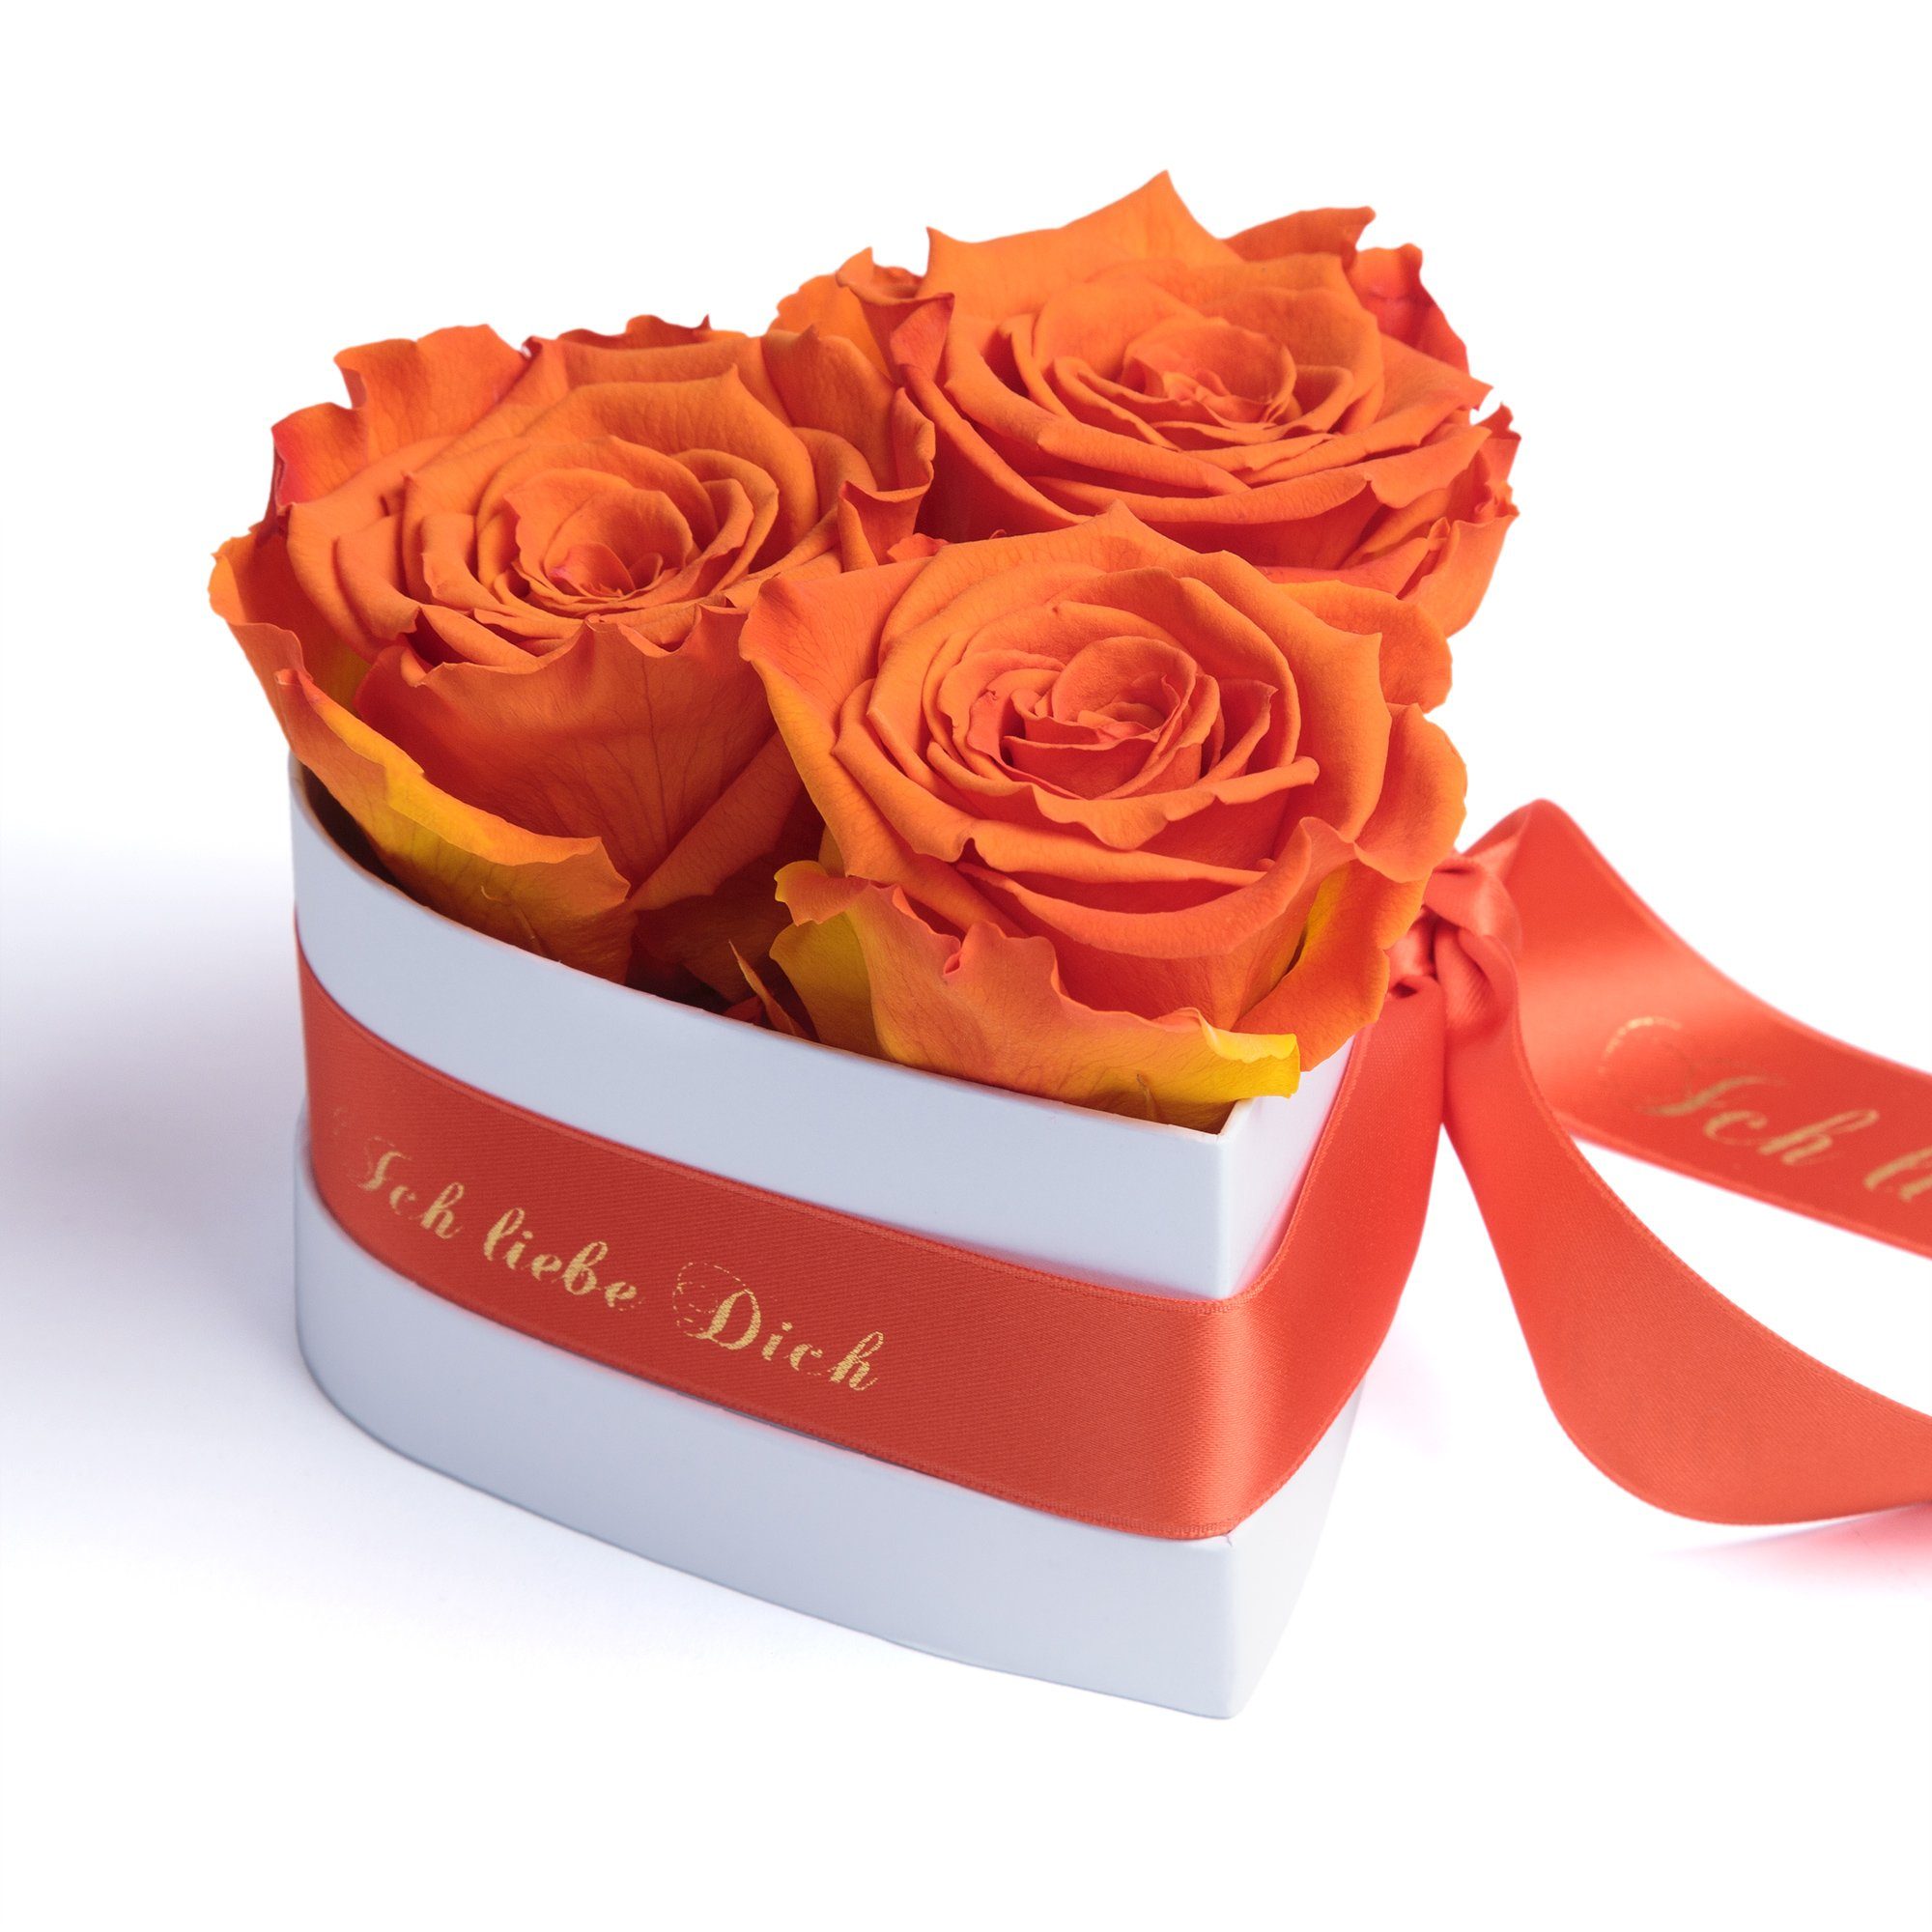 I Love You, Orange ROSEMARIE SCHULZ Heidelberg Blumenherz Infinity Rosenbox in Herzform konservierte Rosen Geschenk für Frauen